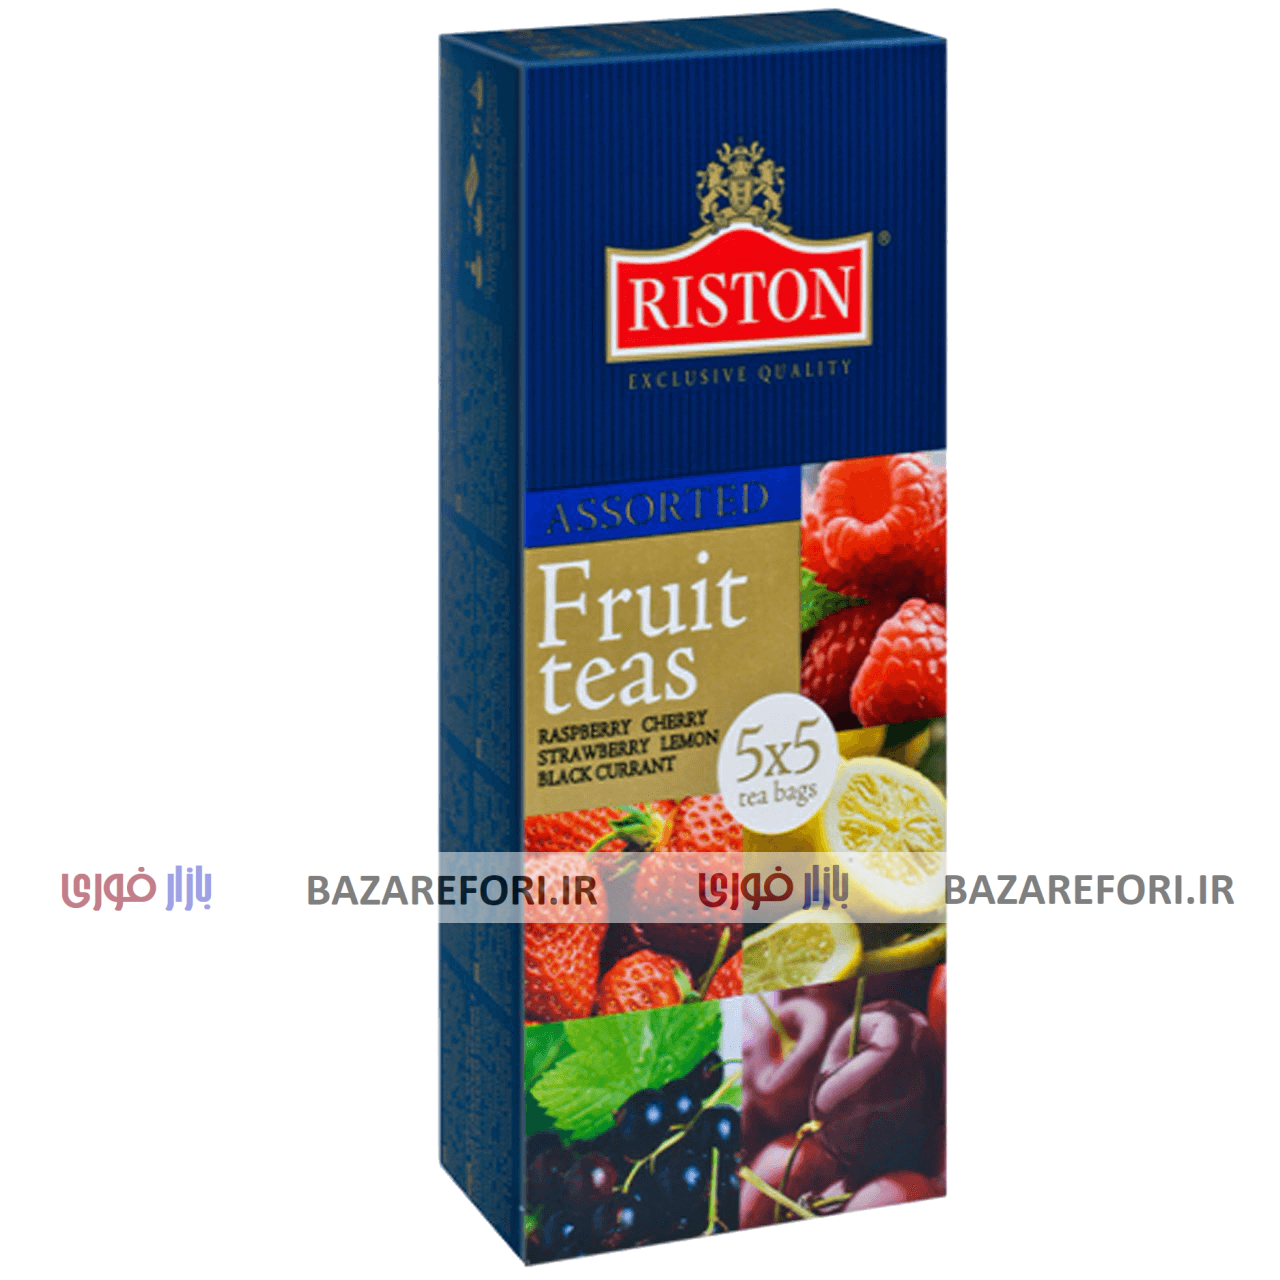 بسته چای کیسه ای ریستون مدل Assorted Fruit